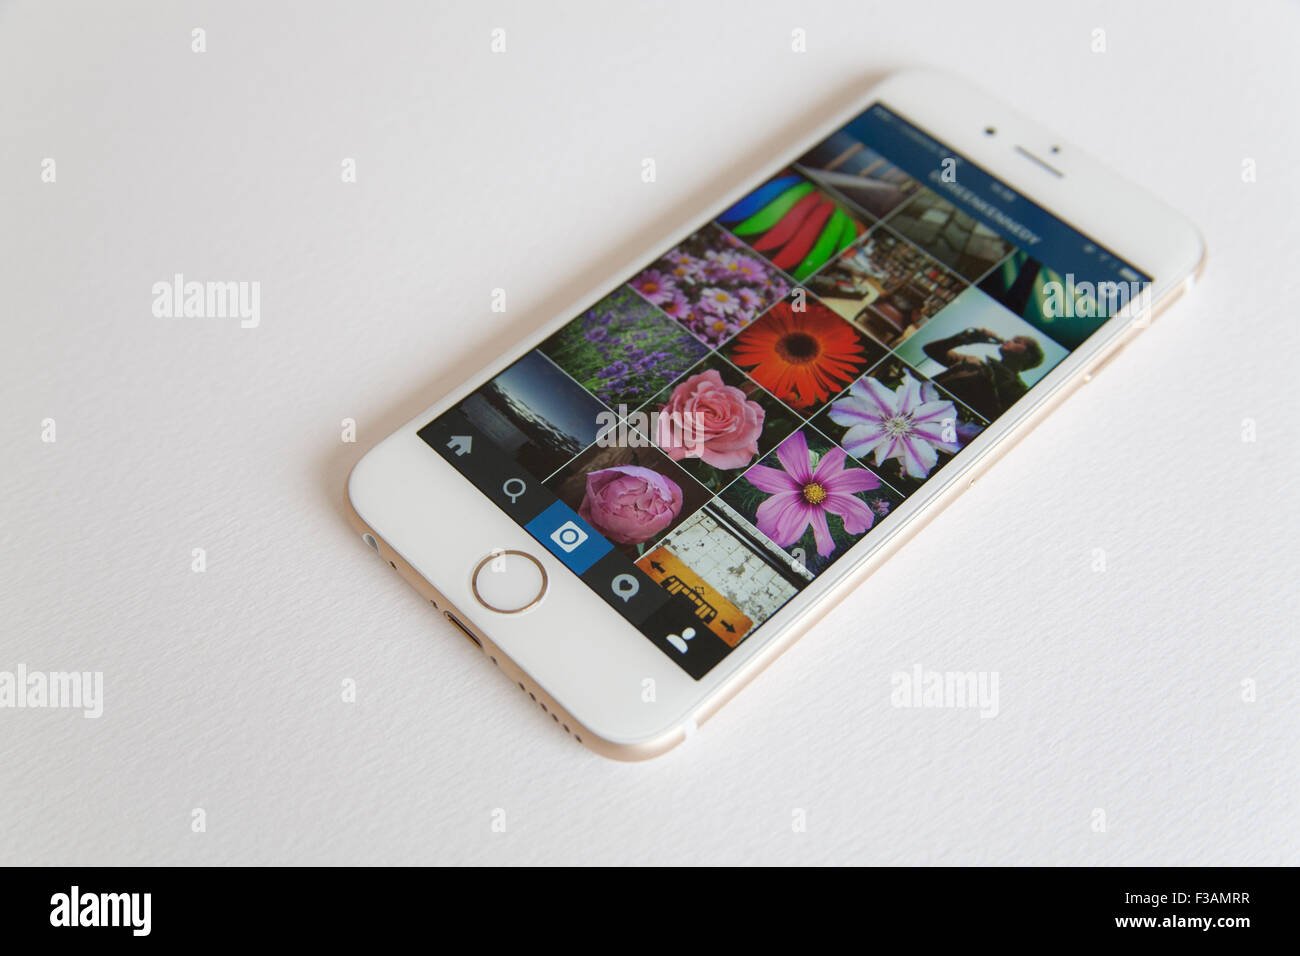 Oro e Bianco Apple iPhone 6 con un Instagram feed foto contro uno sfondo bianco Foto Stock